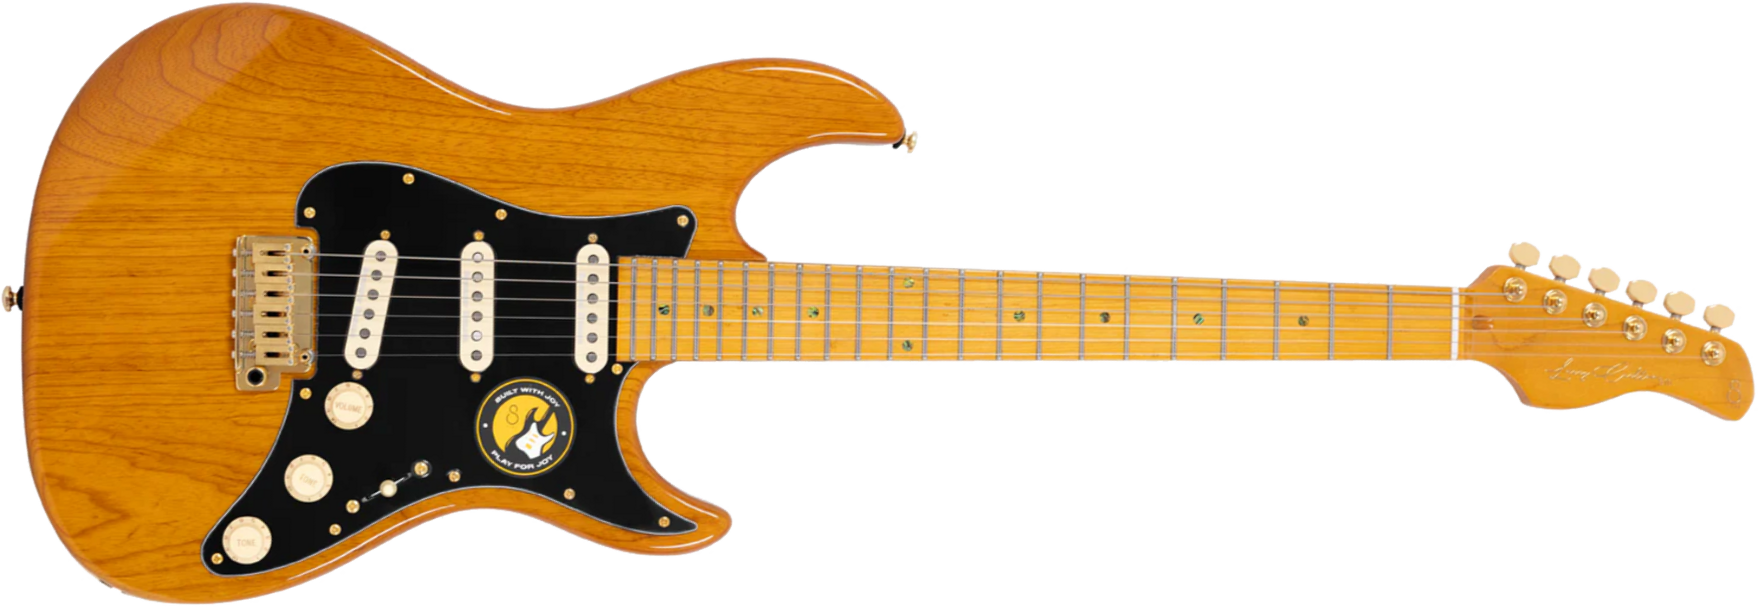 Sire Larry Carlton S10 Sss Signature 3s Trem Mn - Natural - Guitare Électrique Forme Str - Main picture